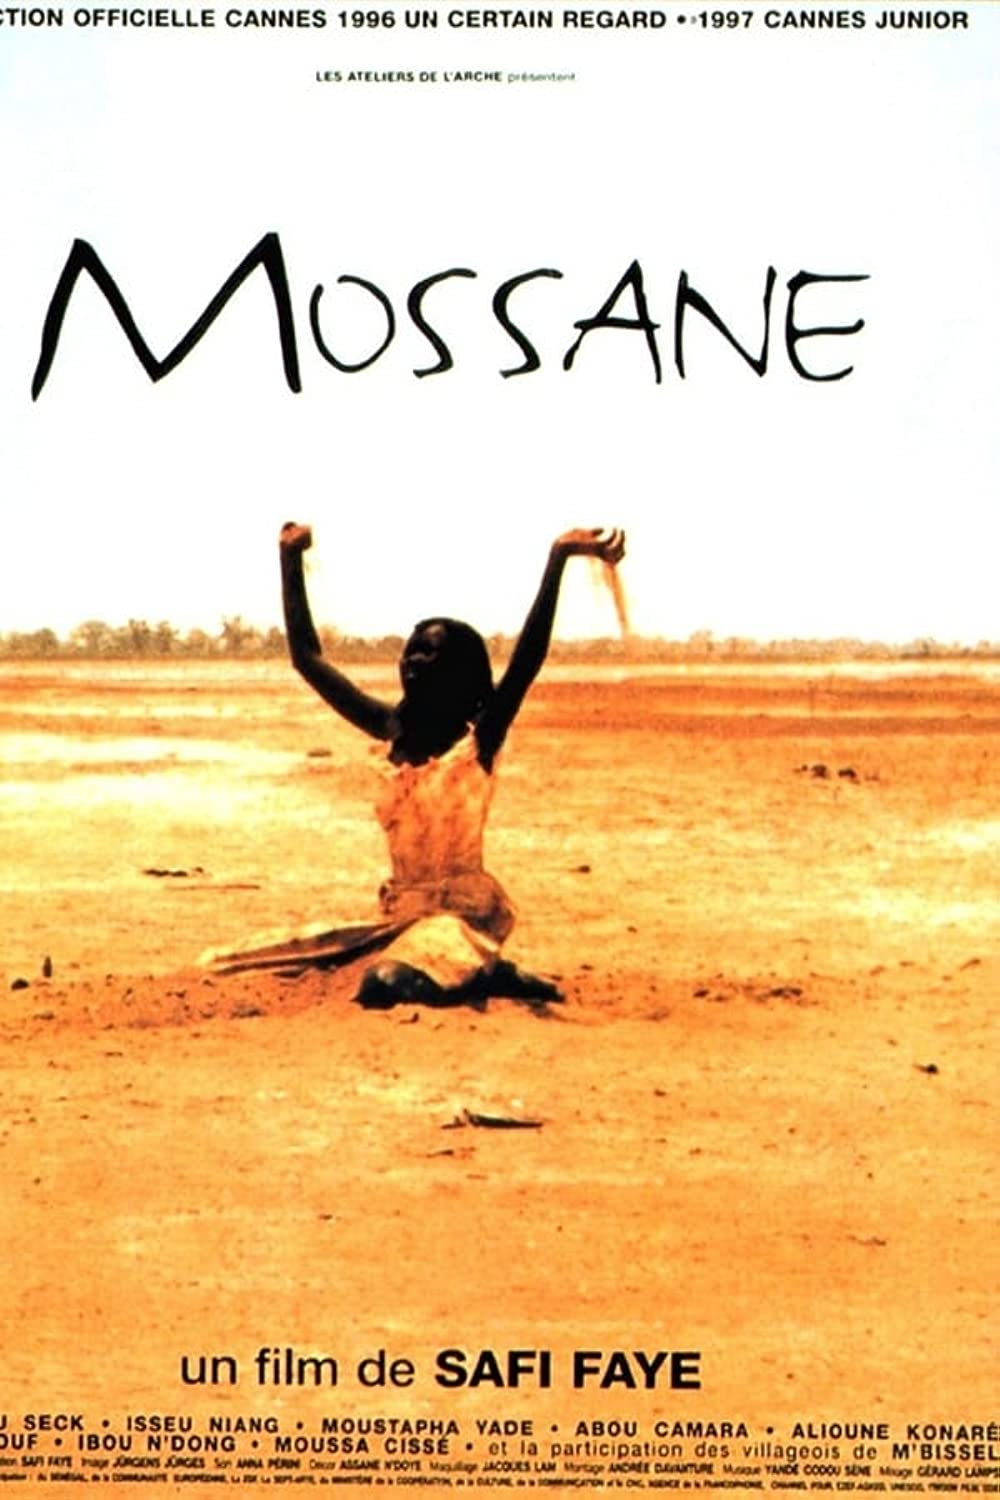 Filmbeschreibung zu Mossane